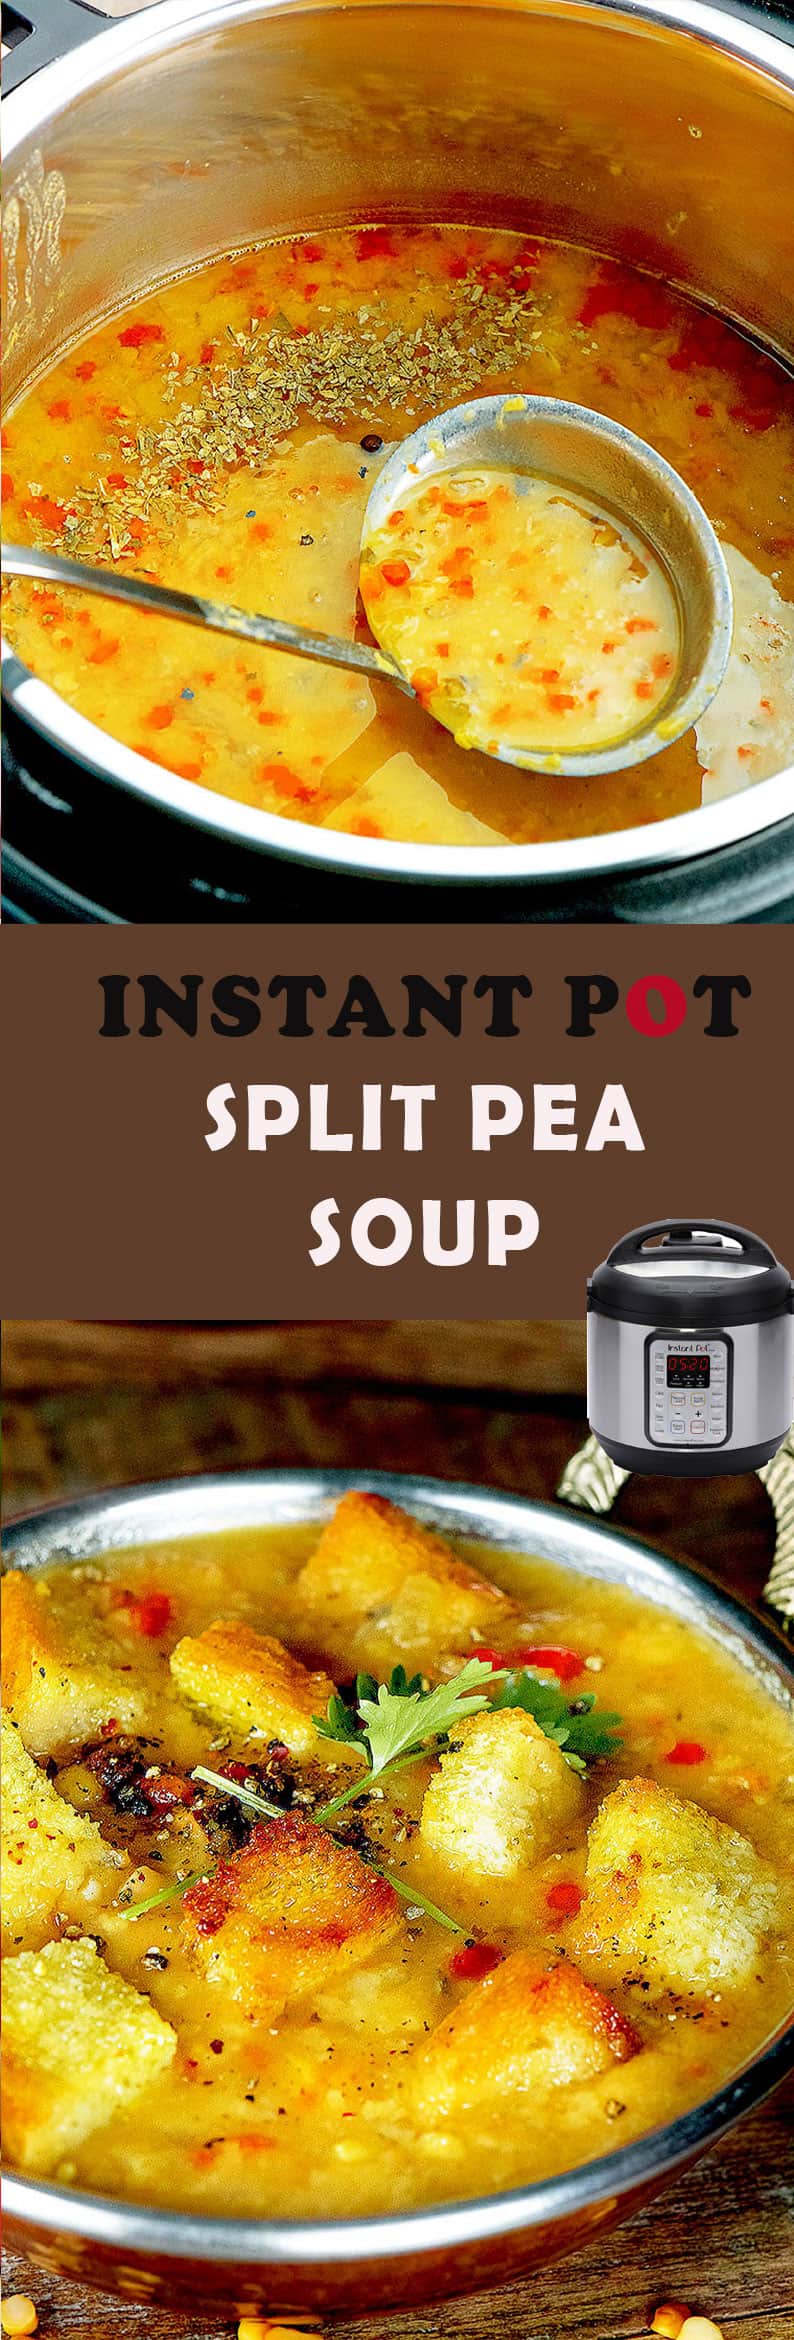 nstant-pot-split-pea-soup